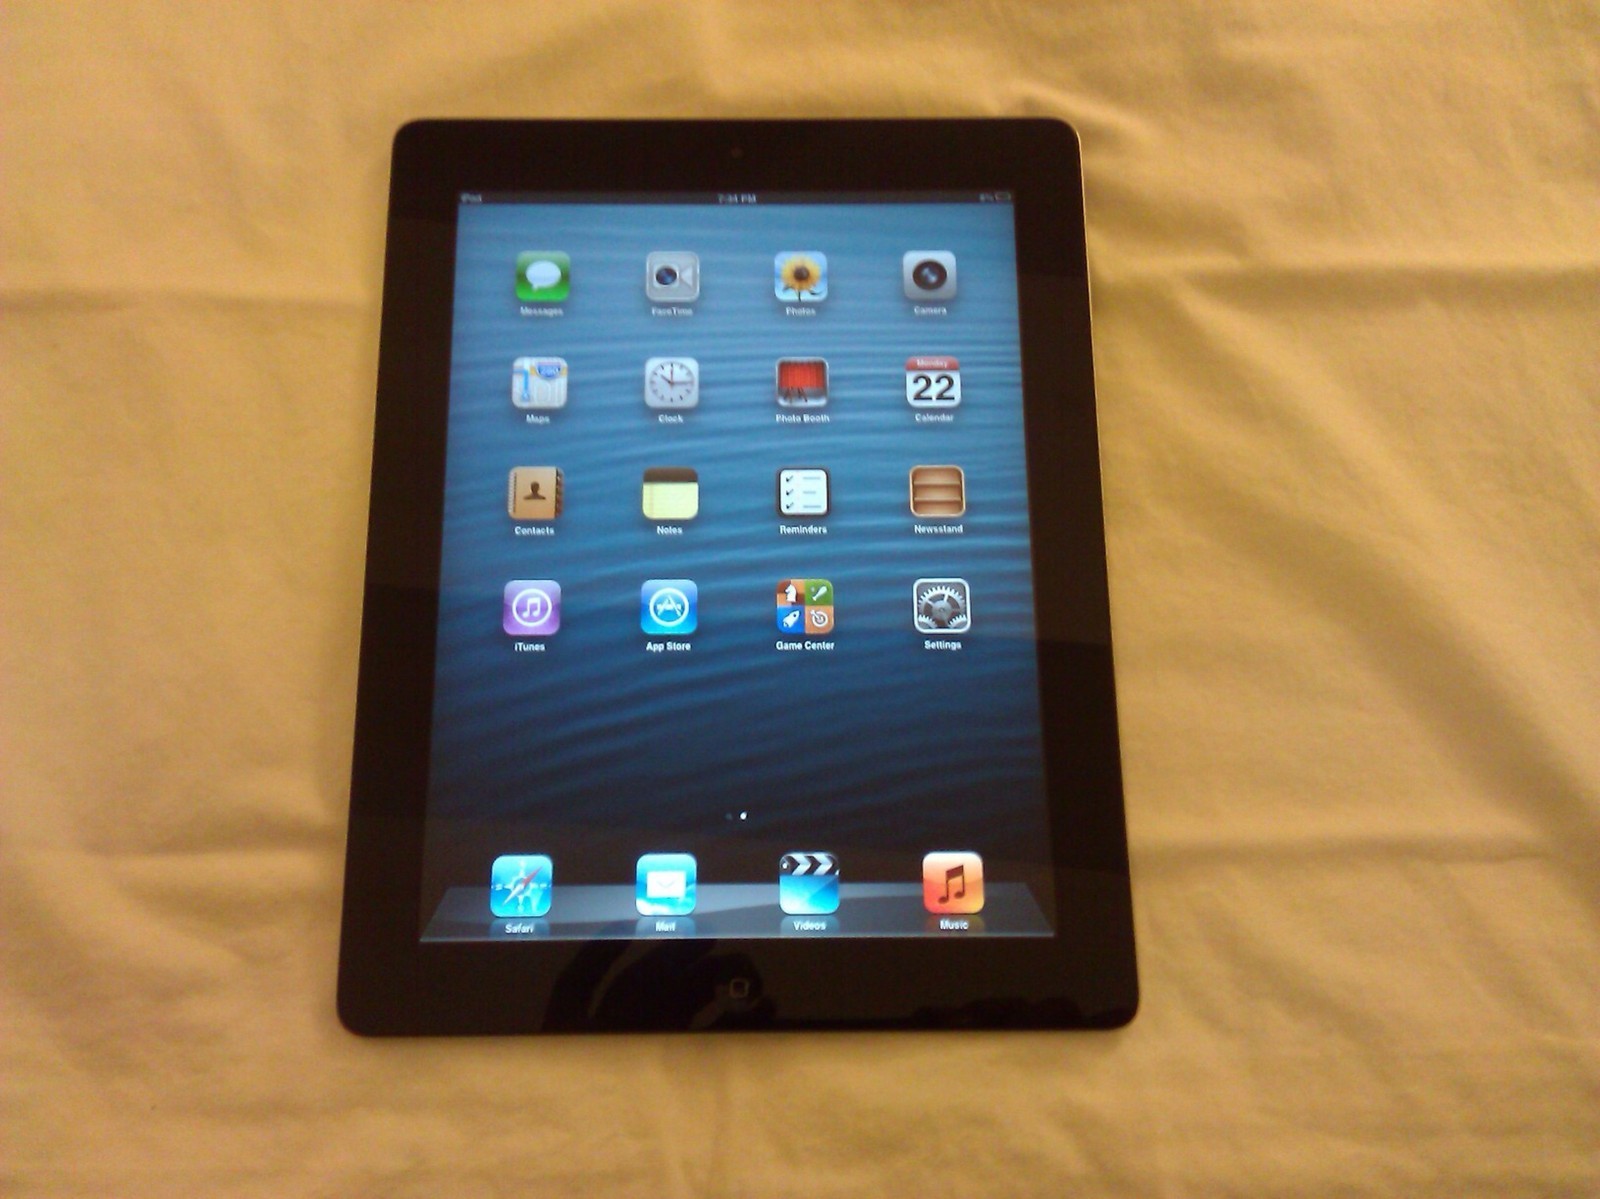 Apple iPad 2 32GB, Wi-Fi, 9.7in Black Model (MC770CH/A) A1395 - iPads